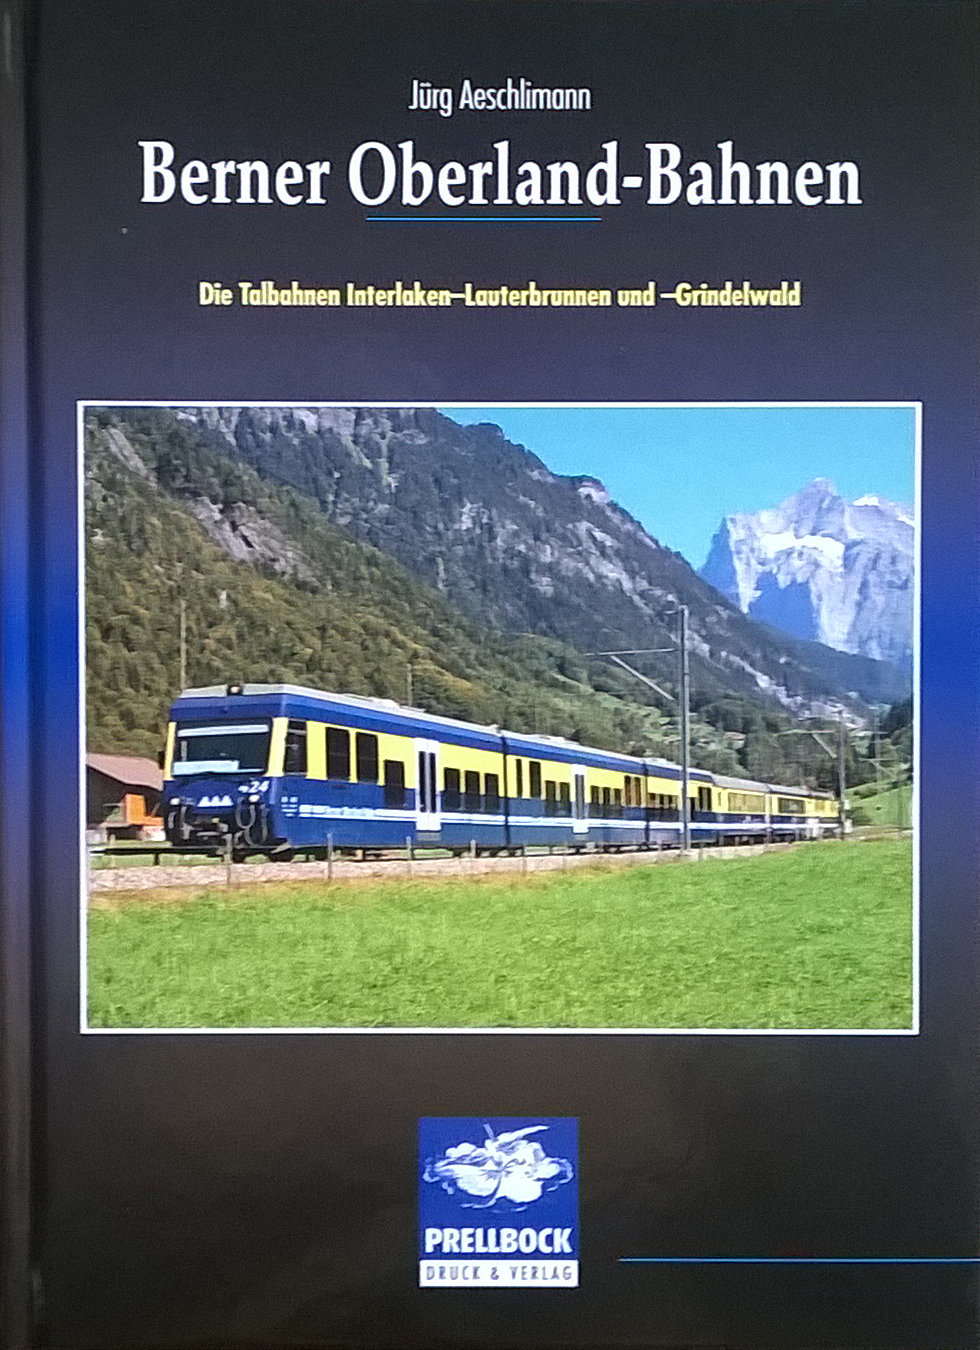 Die Oberlandbahn